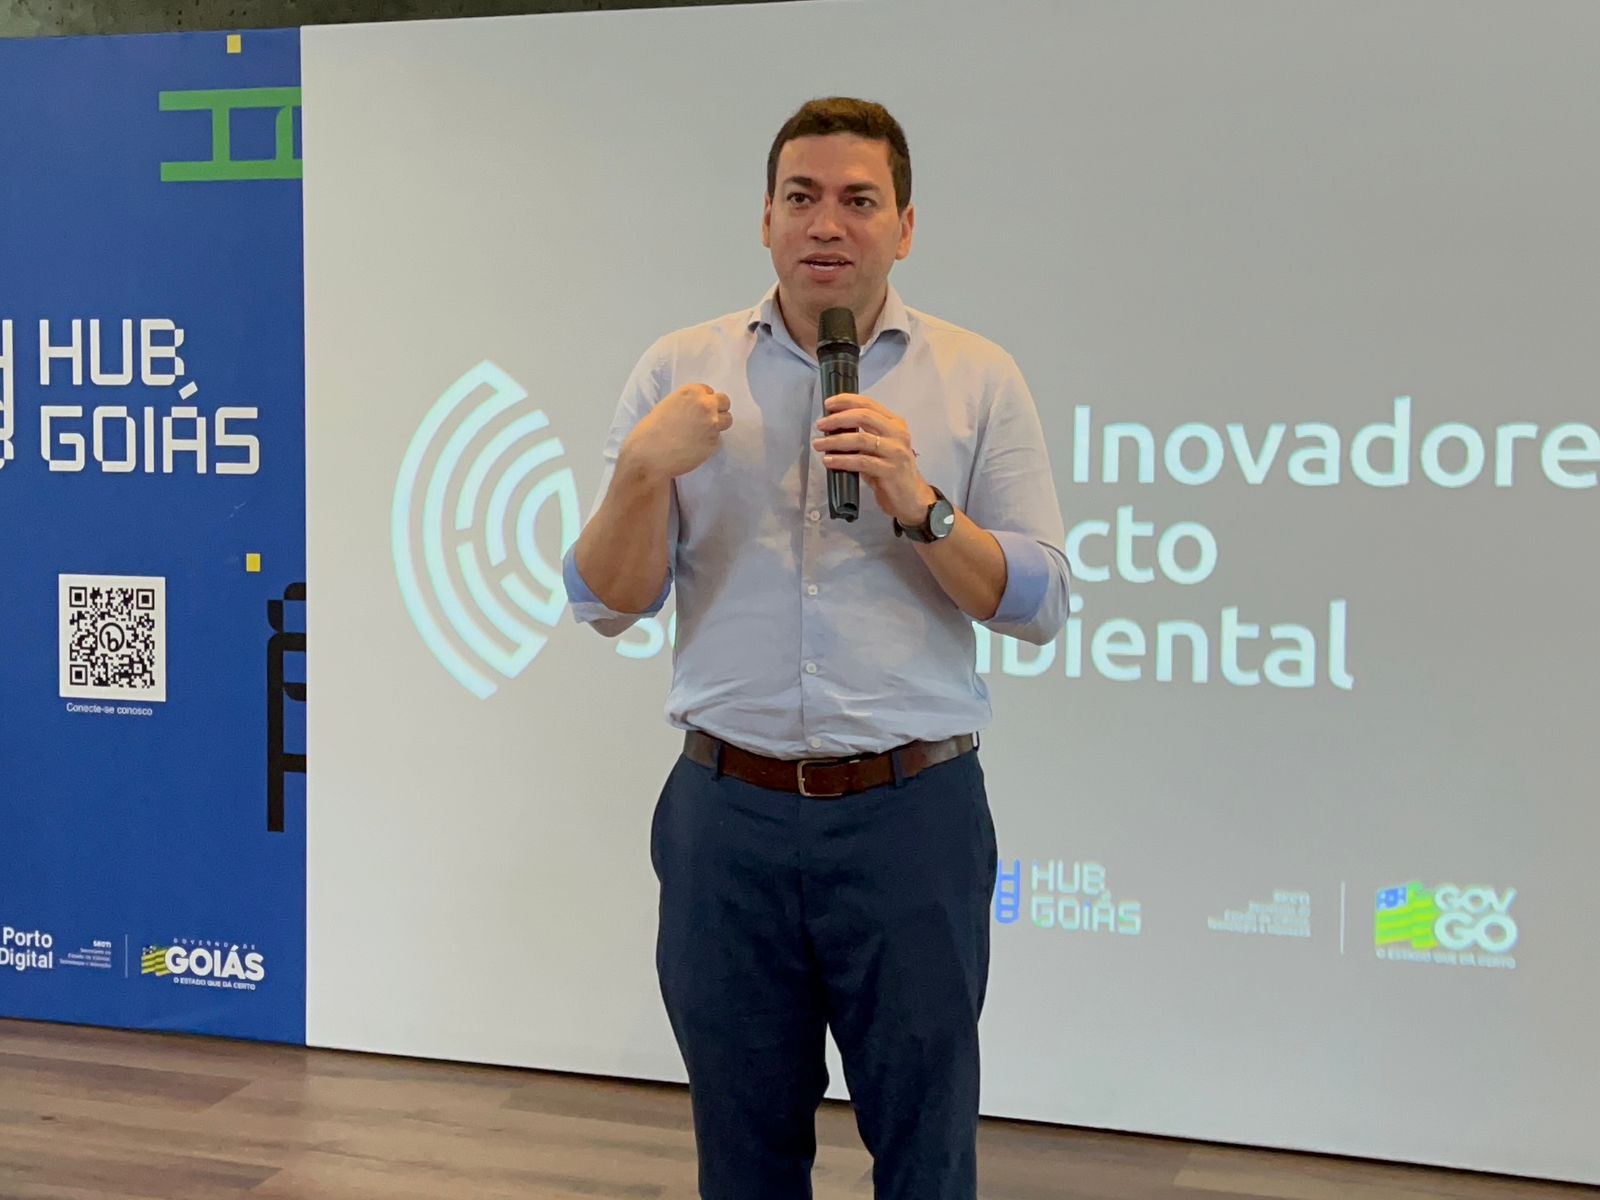 Governo de Goiás apresenta startups para ações inovadoras de impacto socioambiental